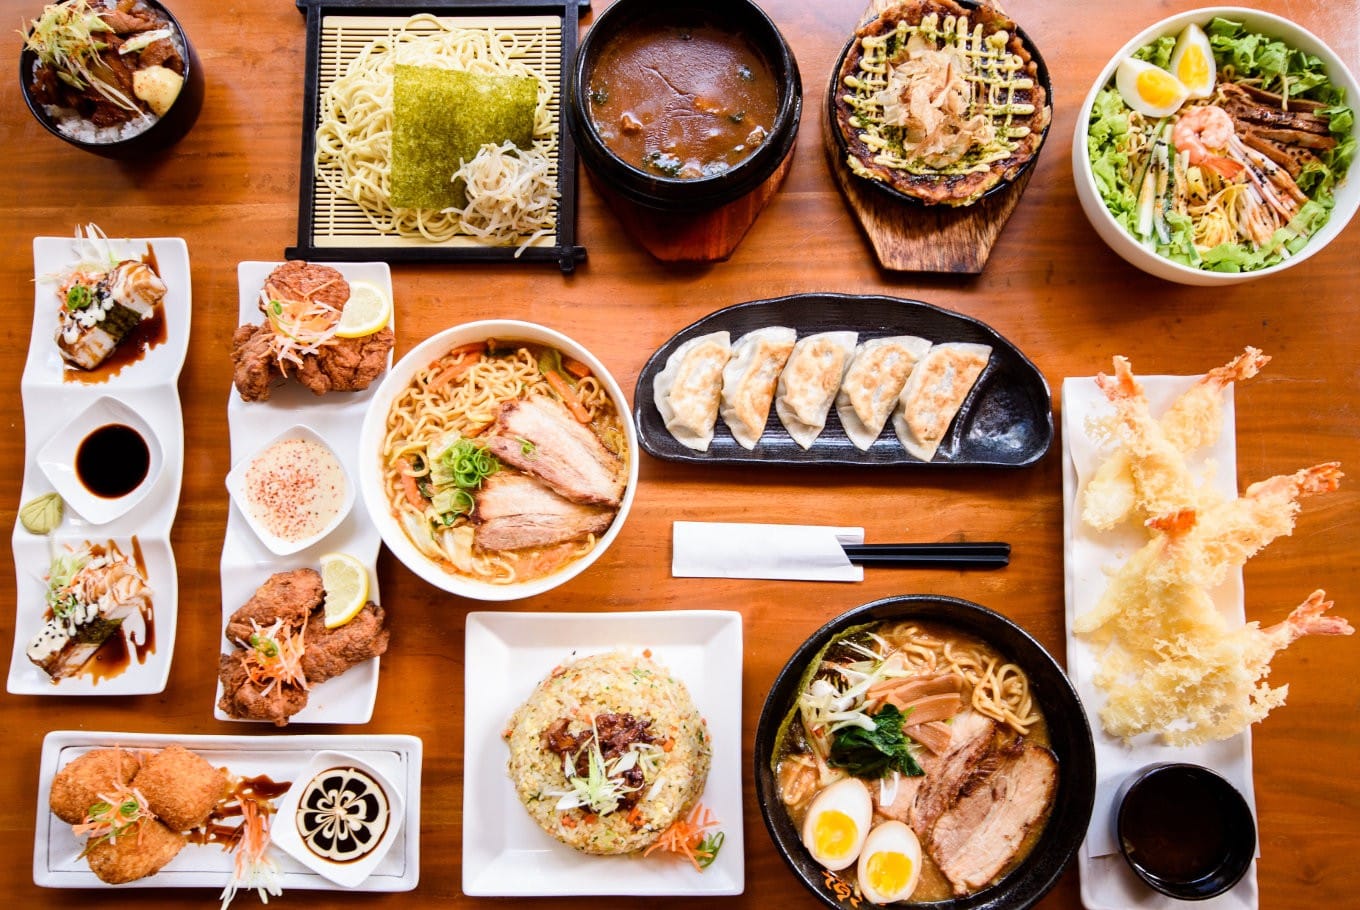 รวมข้อมูล "แฟรนไชส์อาหารญี่ปุ่น" แฟรนไชส์ร้านอาหารญี่ปุ่น - SMELeader :  เริ่มต้นธุรกิจ, ธุรกิจ SMEs, แฟรนไชส์และอาชีพ